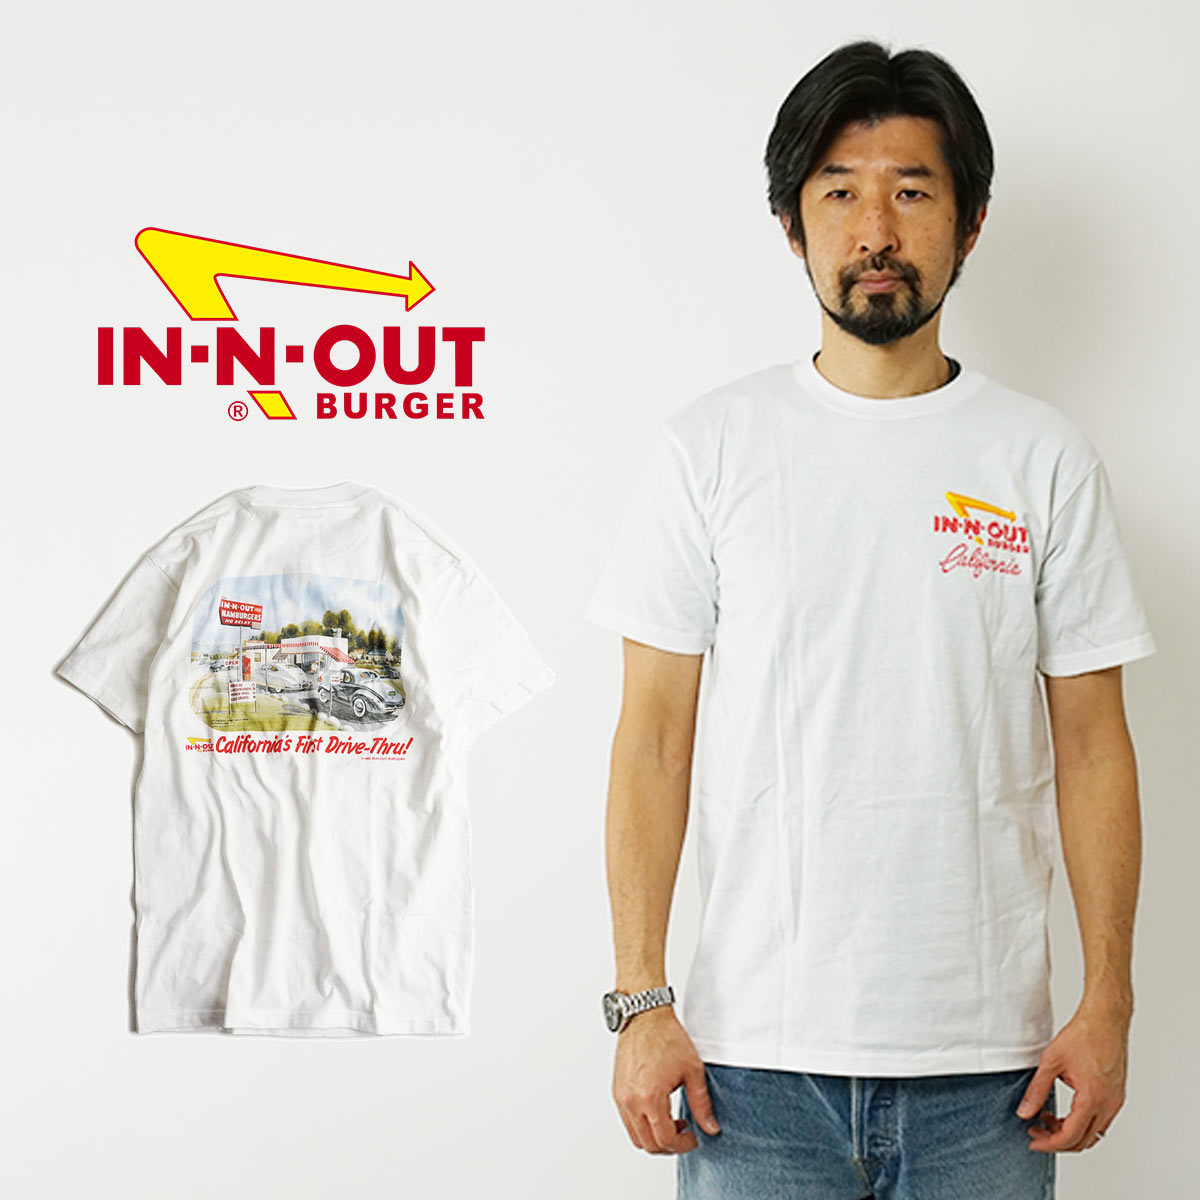 インアンドアウトバーガー 半袖 Tシャツ 1986 カリフォルニア ファースト ドライブスルー ホワイト (メンズ S-XXL In-N-Out Burger ご当地Tシャツ 海外買い付け スーベニア)